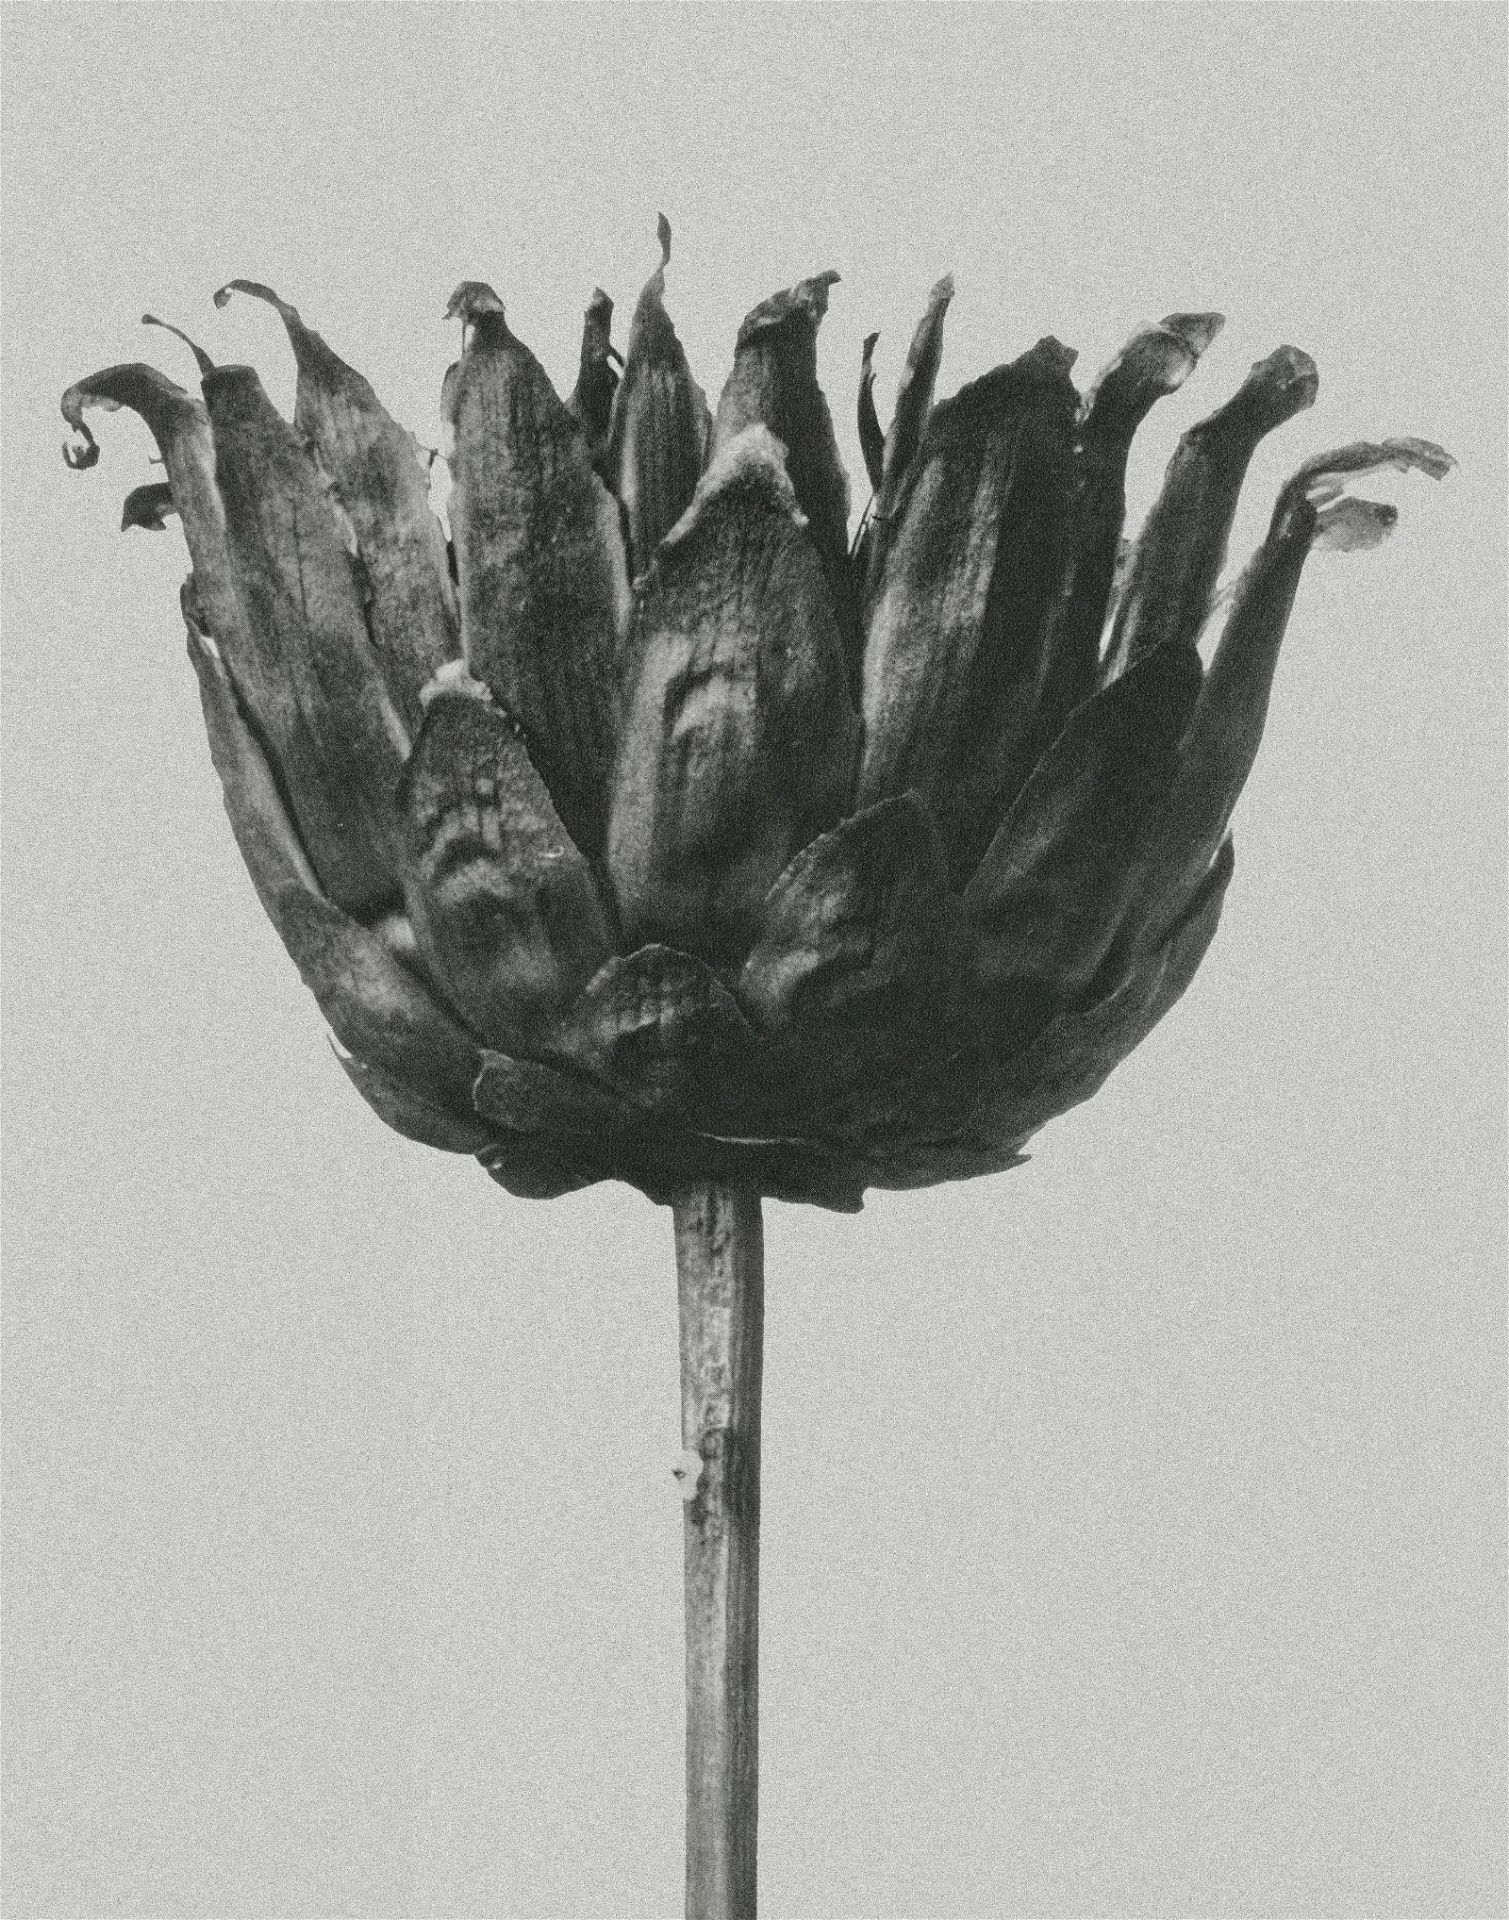 Karl Blossfeldt "Flower" Print